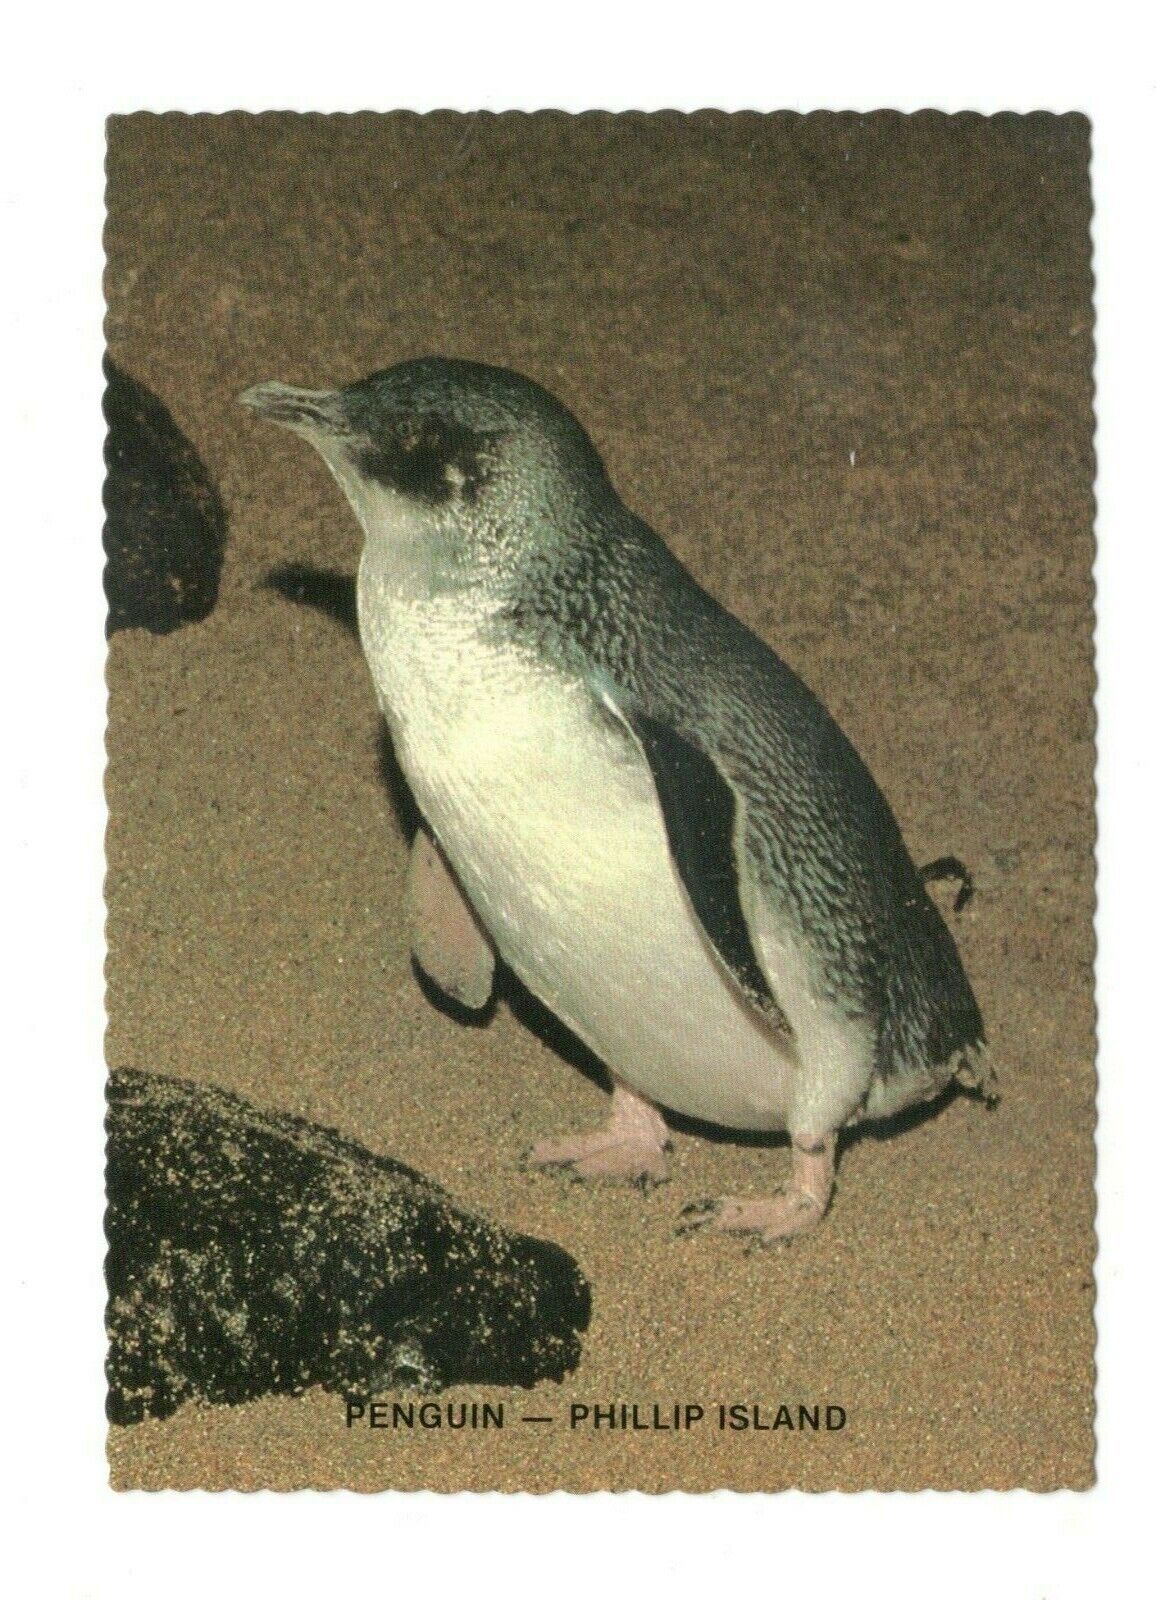 Penguin Phillip Island Australia Unused 4X6 Postcard EB85